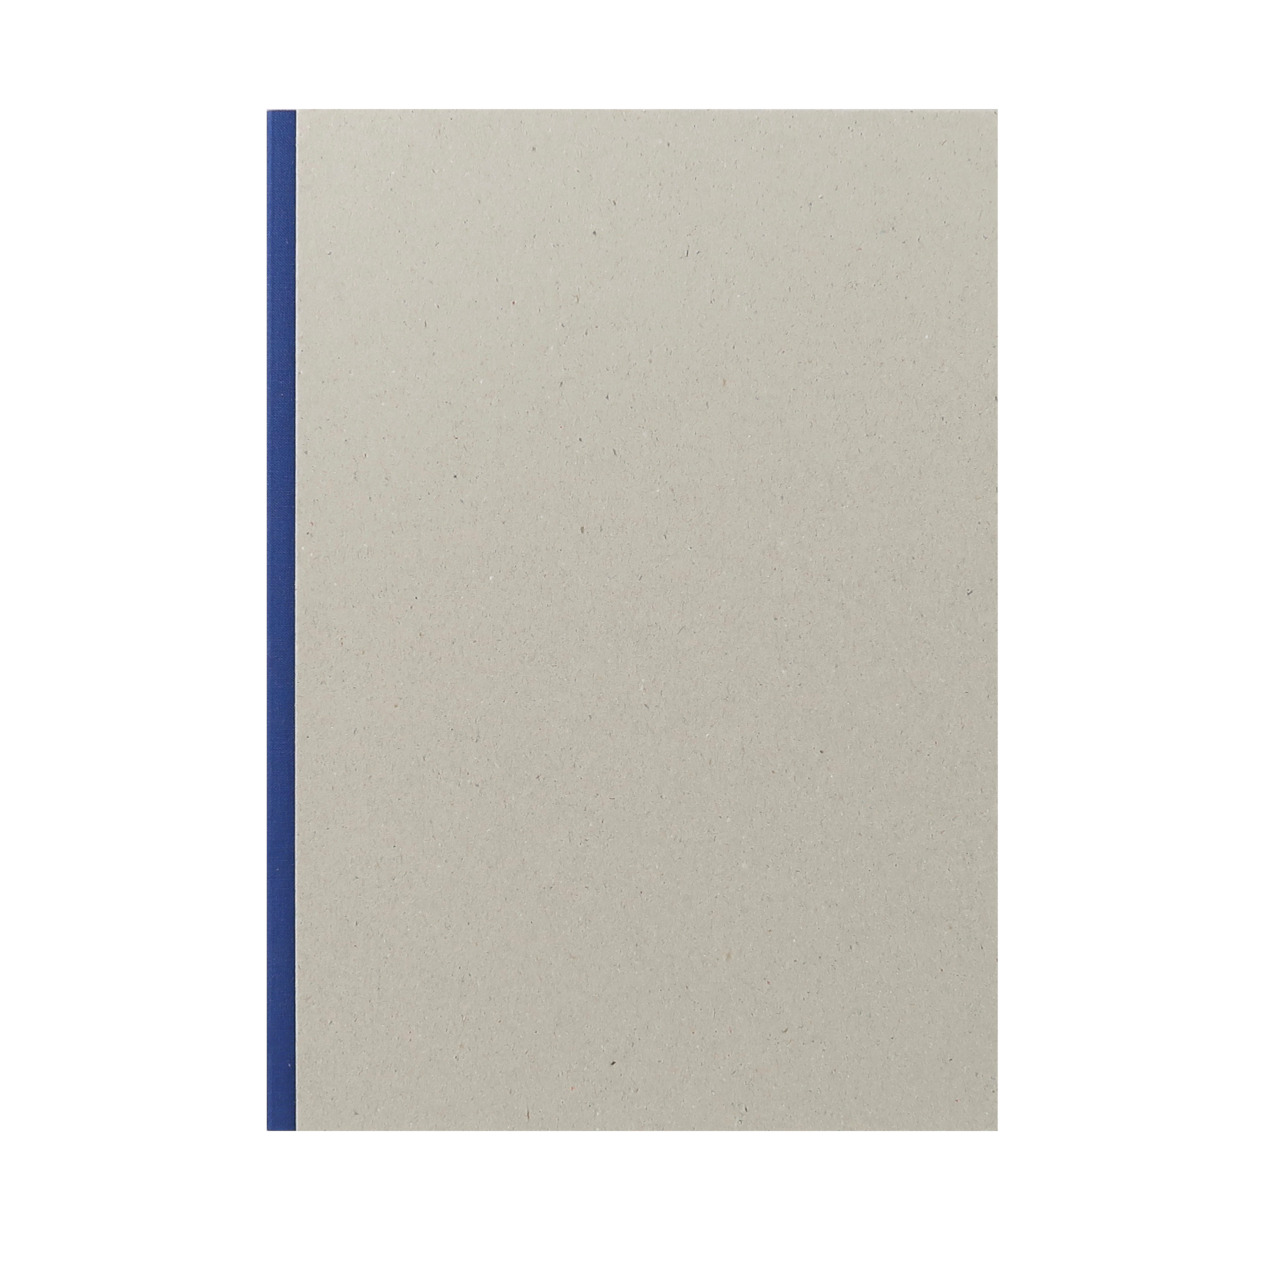 Kunst & Papier Greyboard A4 Sketchbooks with Coloured Spine - Blue